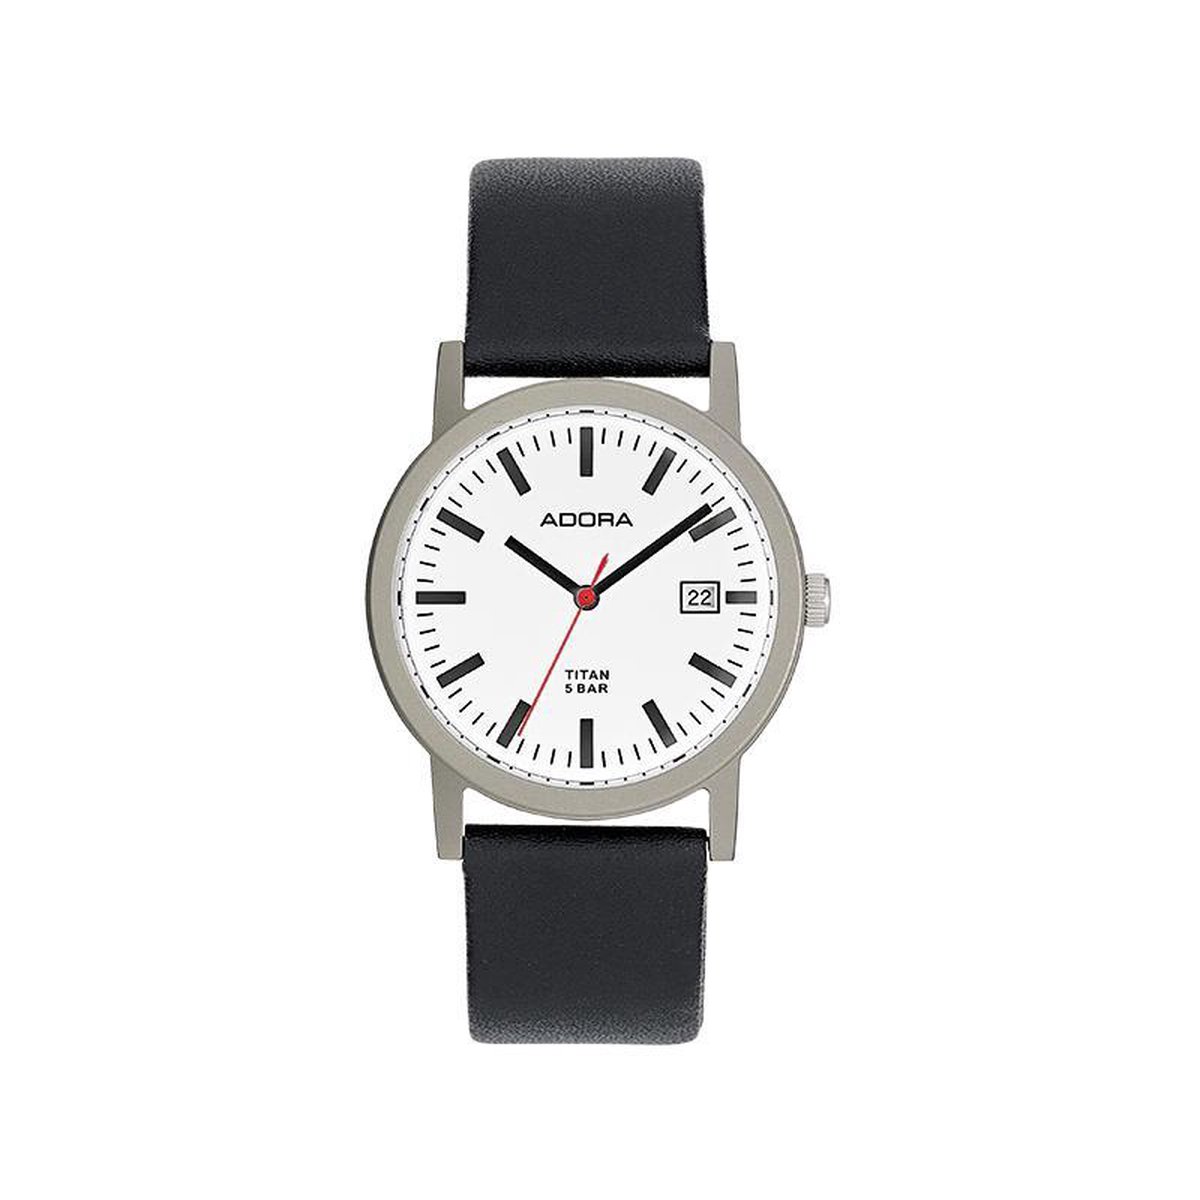 Mooi Adora horloge Titanium met datumaanduiding. AB6550